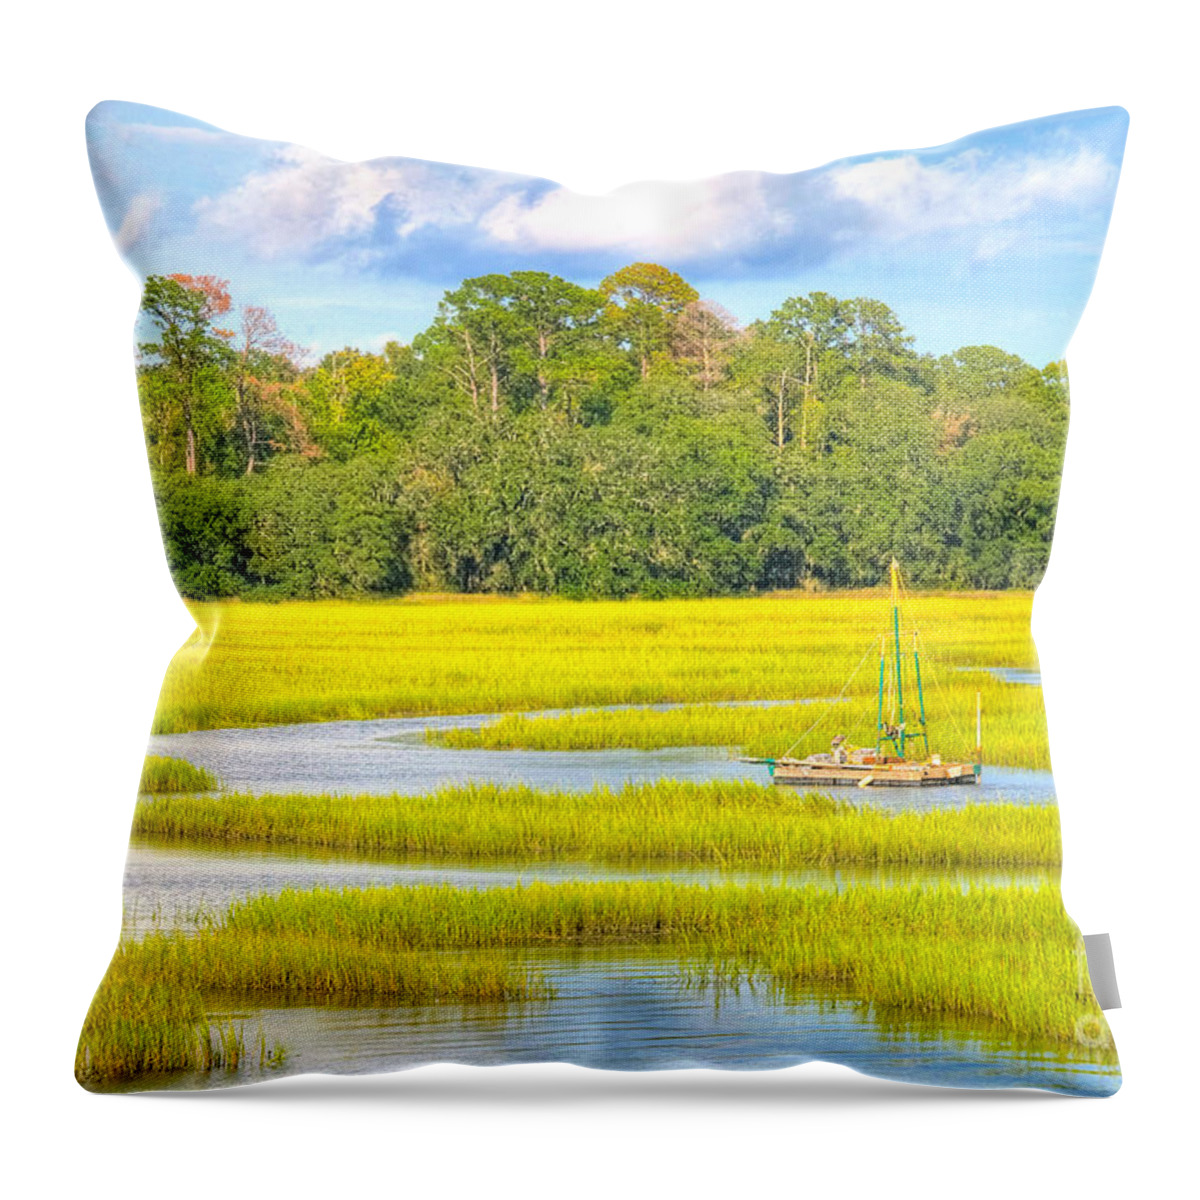 Marsh Throw Pillow featuring the photograph Tidal Castaway by Scott Hansen